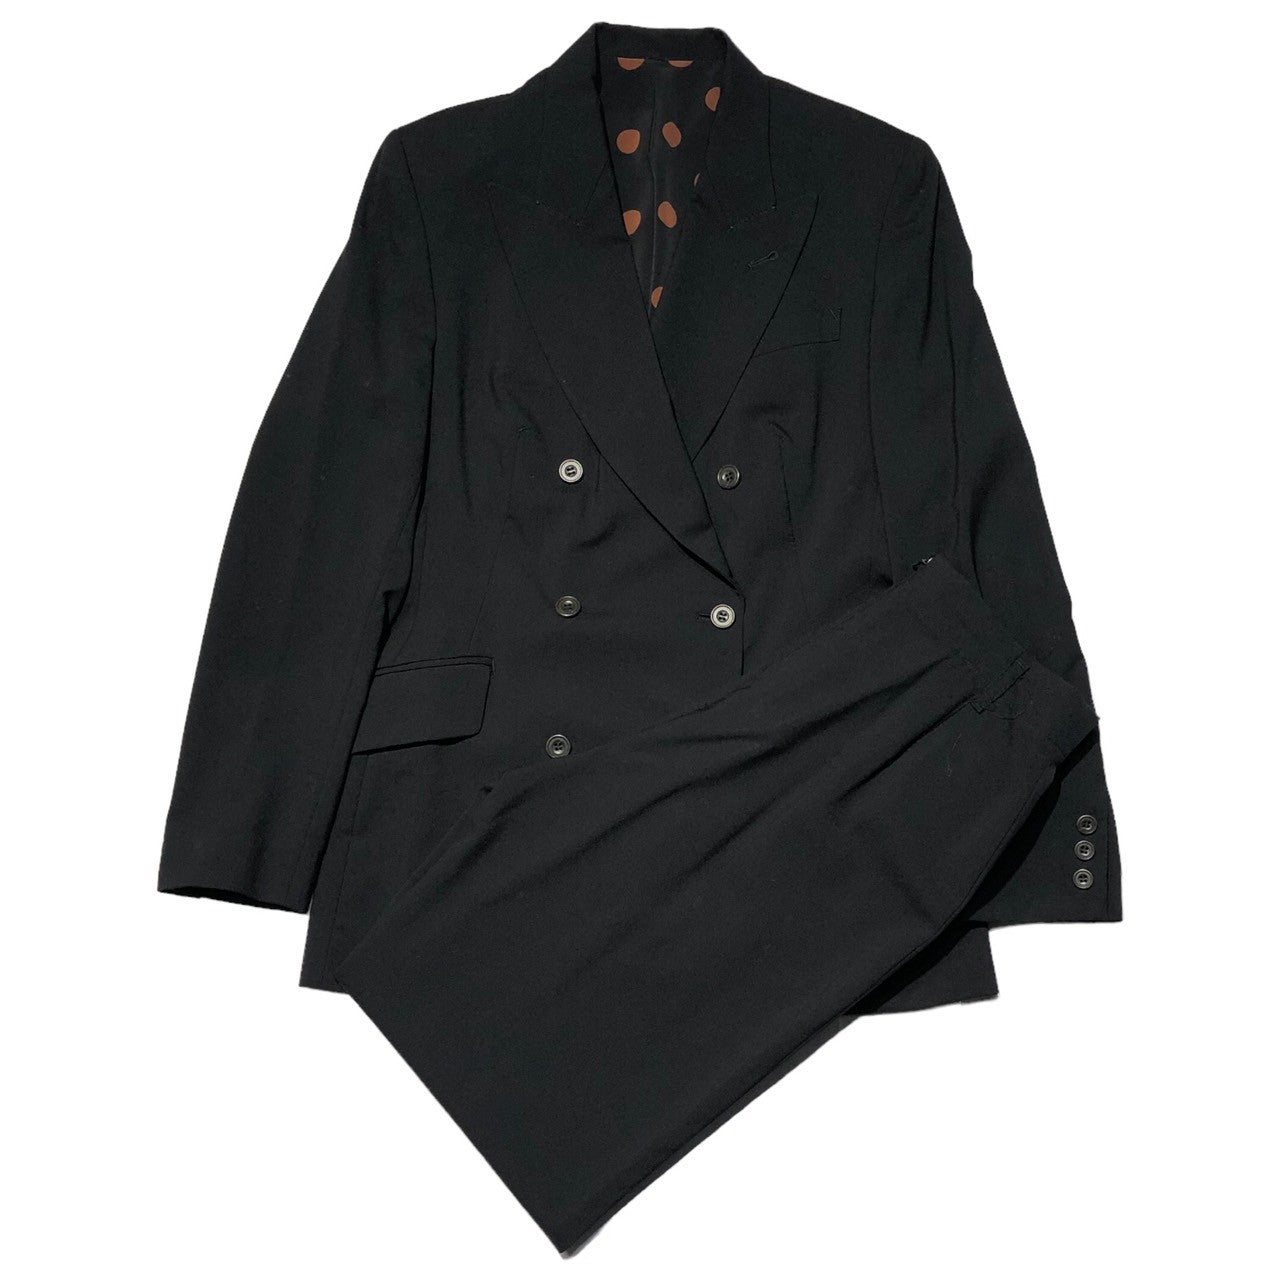 Jean Paul GAULTIER FEMME(ジャンポールゴルチエファム) 90's Design jacket double jacket setup デザイン ポケット ダブル ジャケット セットアップ 40(L程度) ブラック スラックス テーラード スーツ ドット